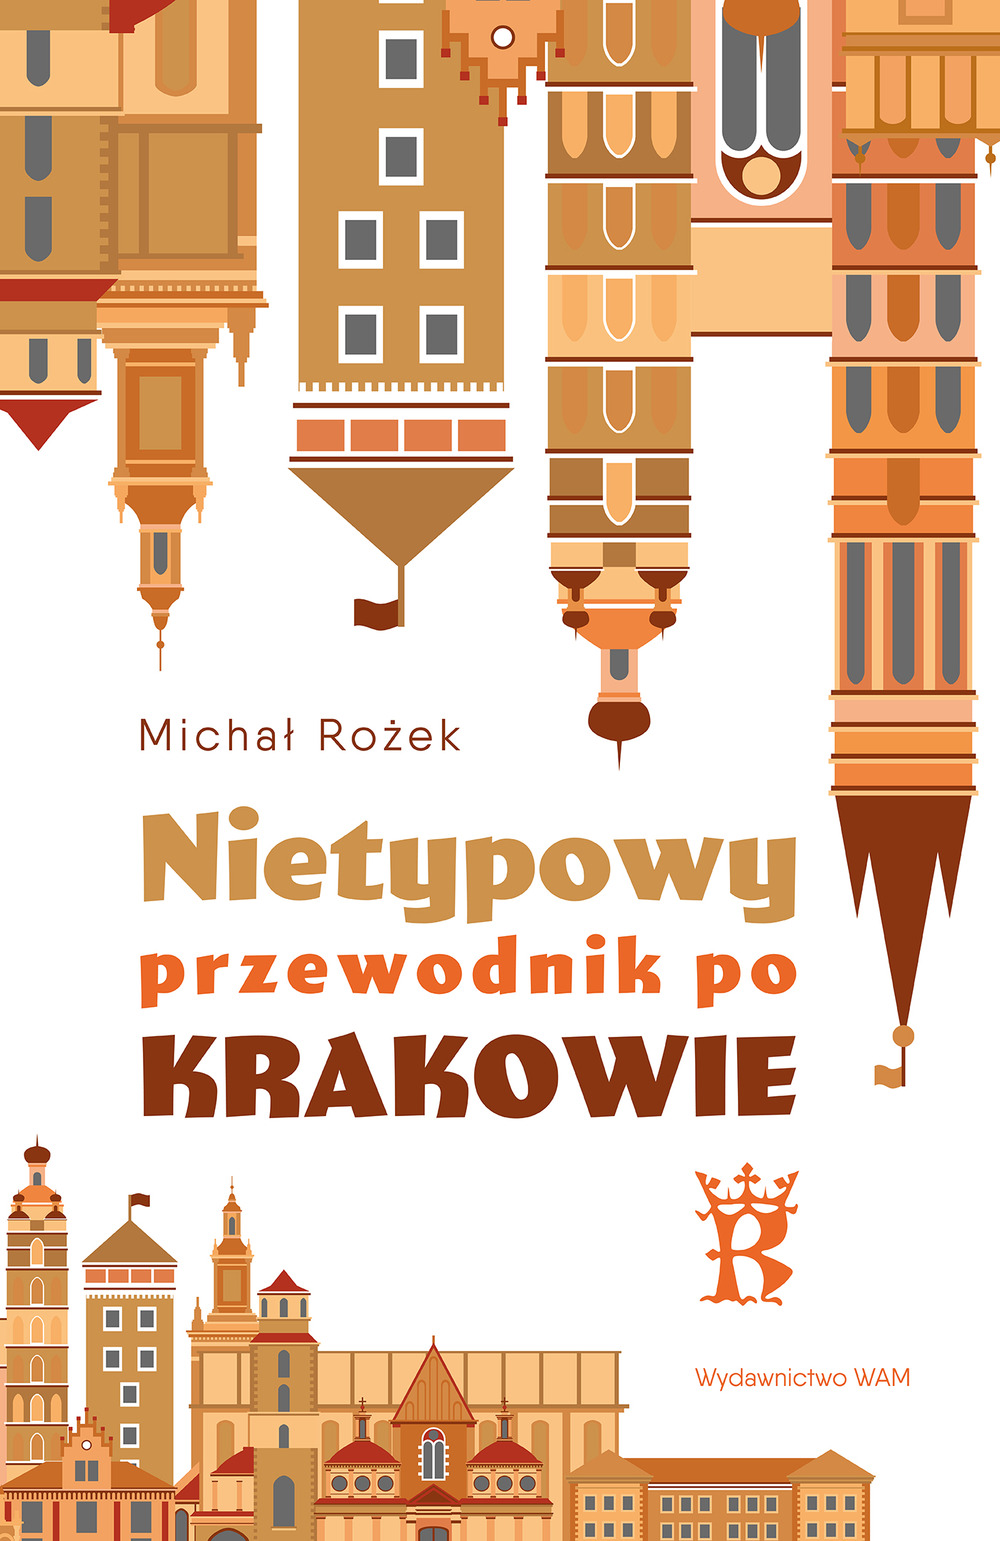 Okładka książki "Nietypowy przewodnik po Krakowie". Autor: Michał Rożek